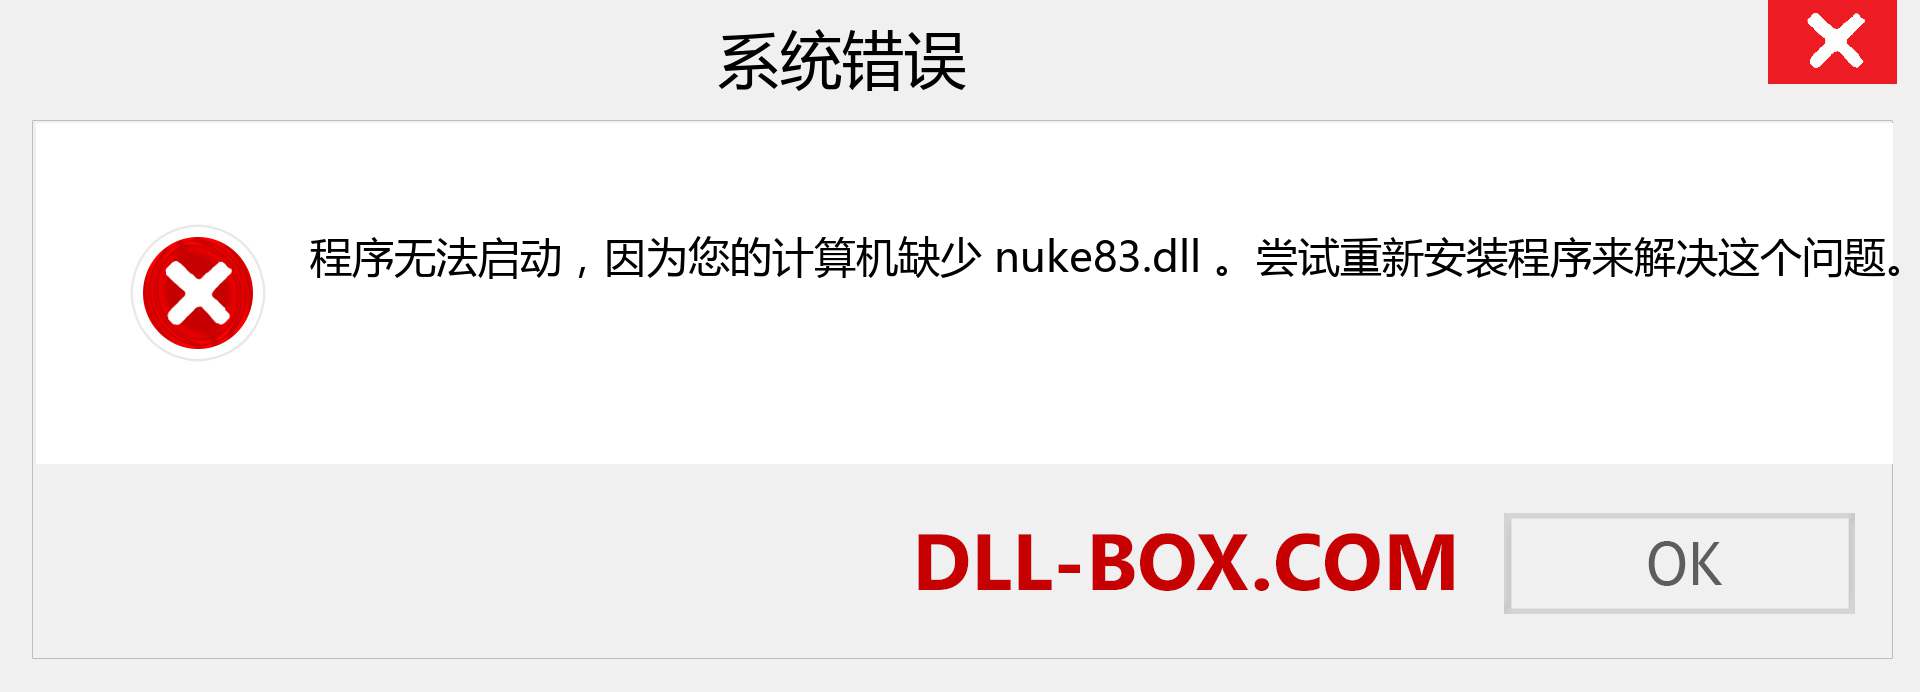 nuke83.dll 文件丢失？。 适用于 Windows 7、8、10 的下载 - 修复 Windows、照片、图像上的 nuke83 dll 丢失错误